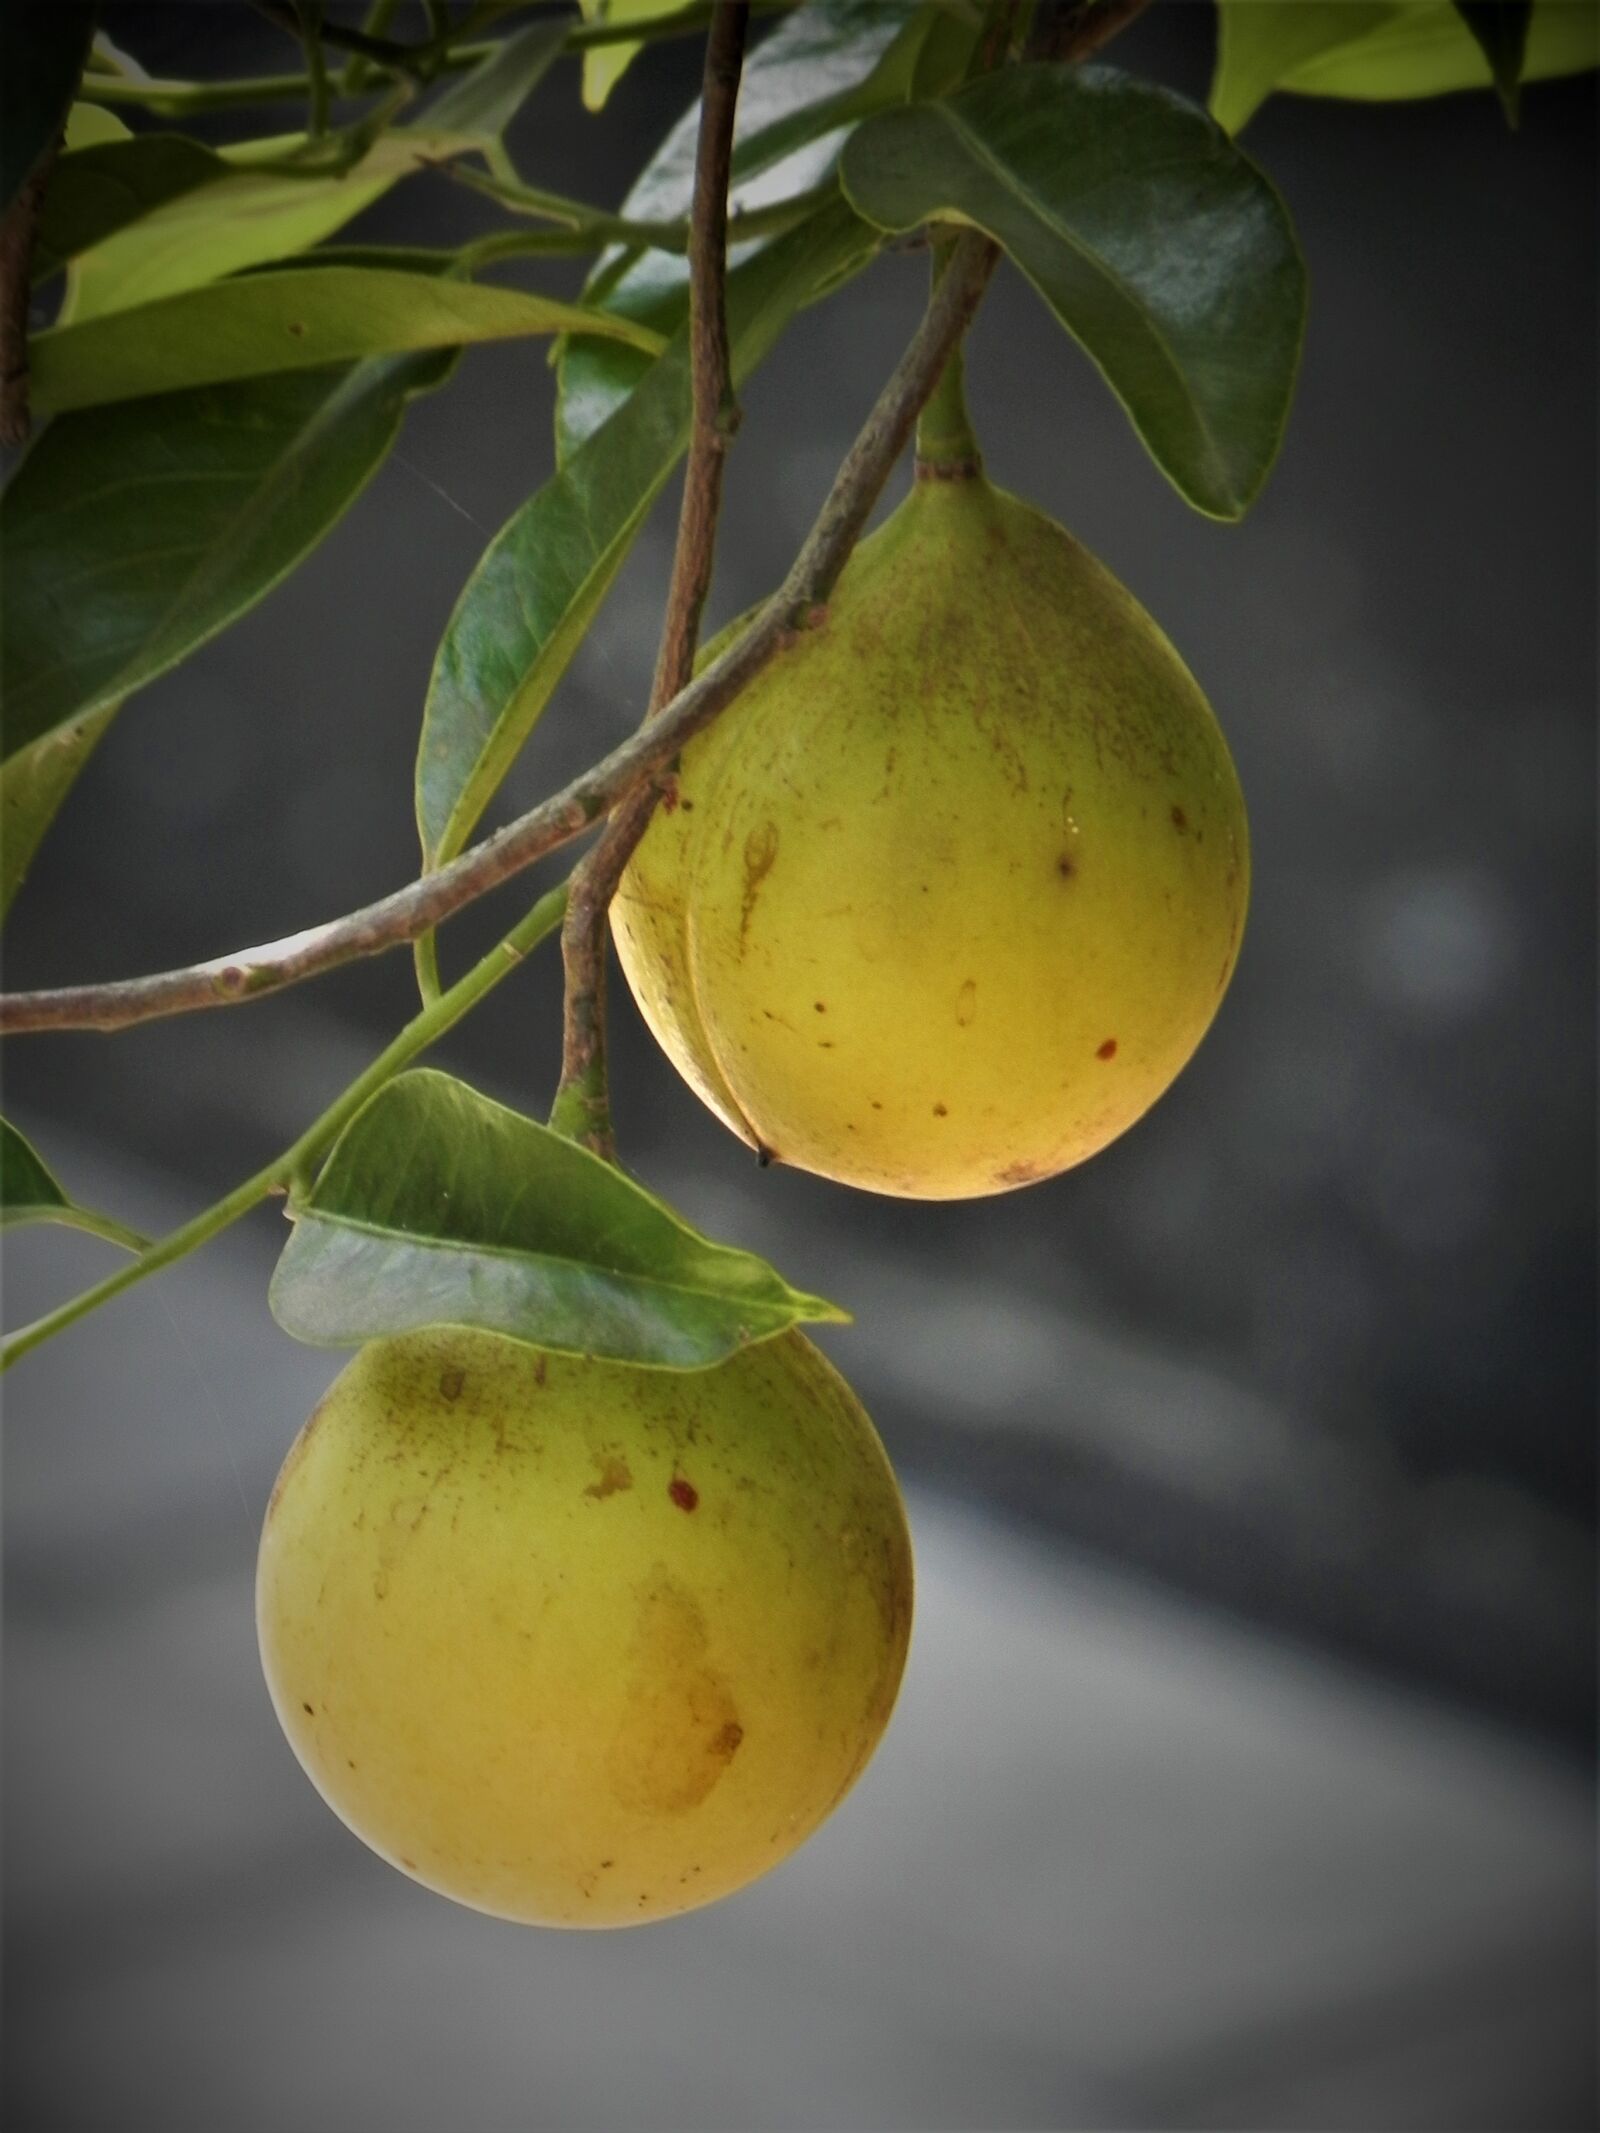 Nikon Coolpix P100 sample photo. Garden, fruits, nutmeg photography